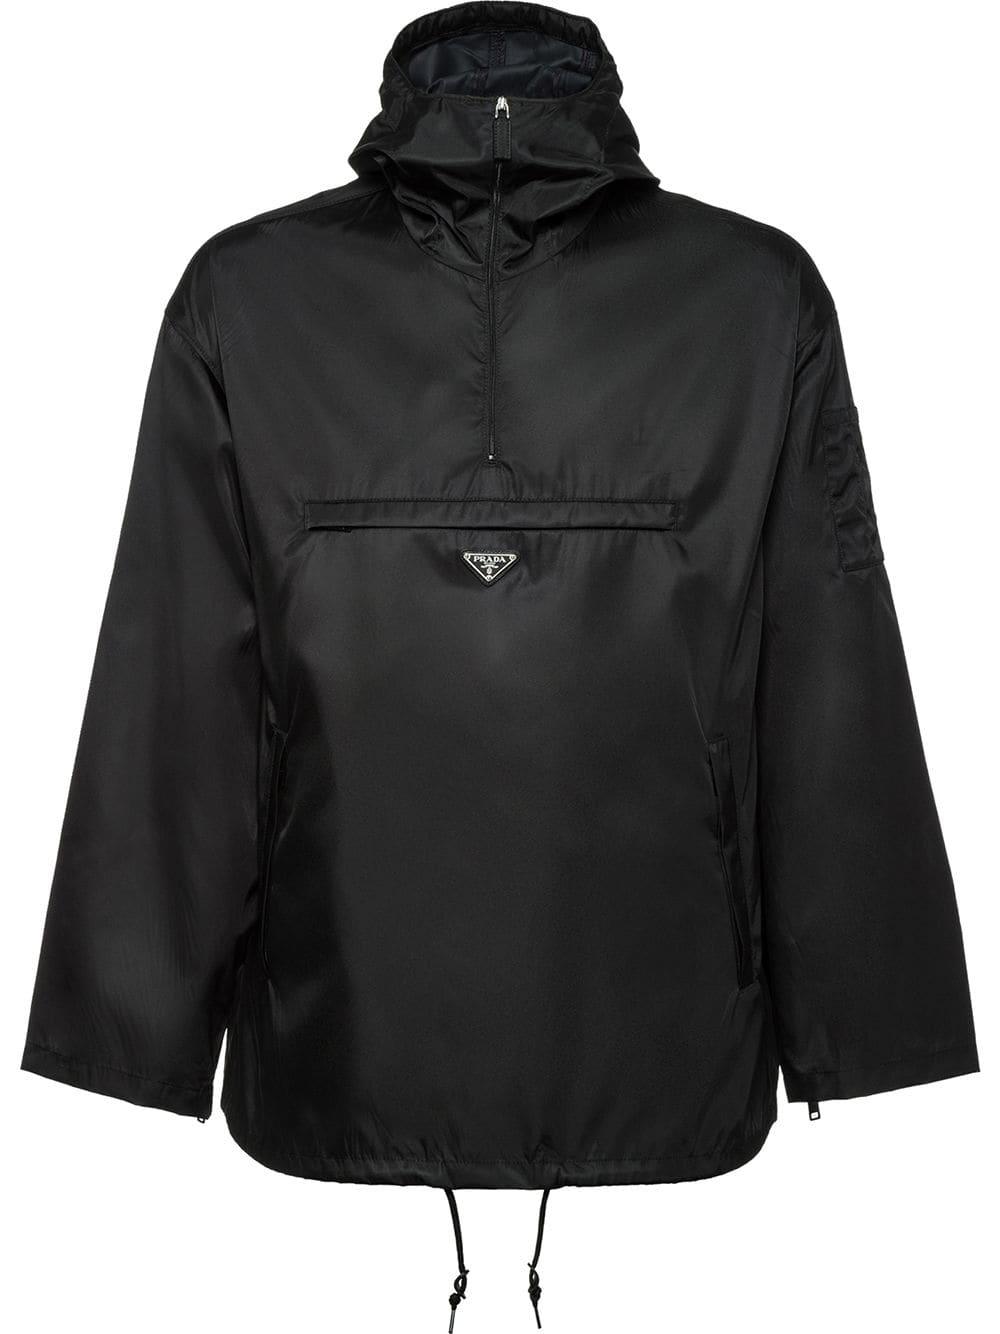 Prada Synthetic Nylon Gabardine Anorak Jacket in Black for Men - Lyst